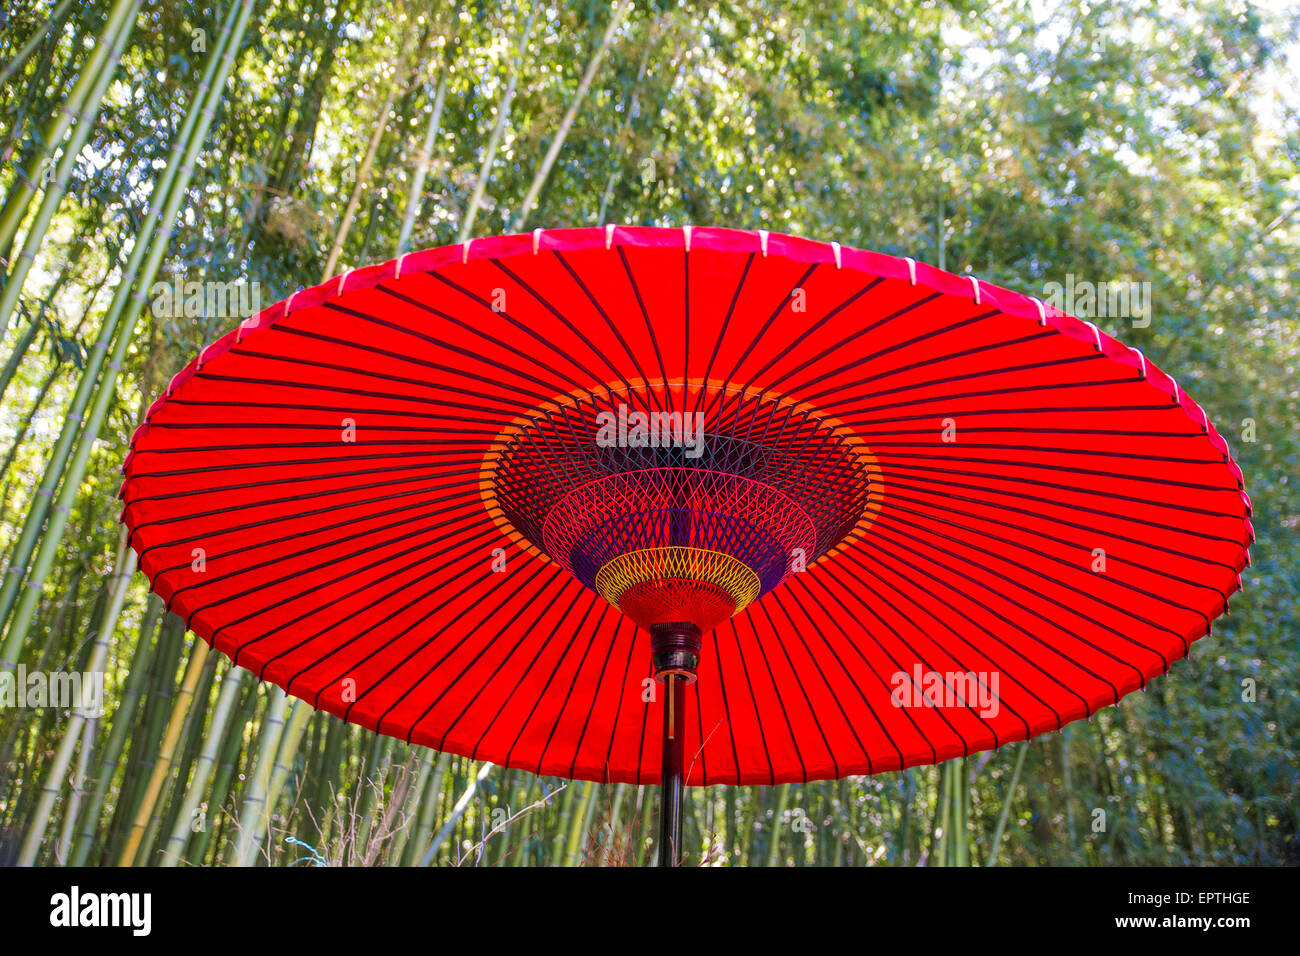 Red parasol in Arashiyama Bamboo Grove Stock Photo